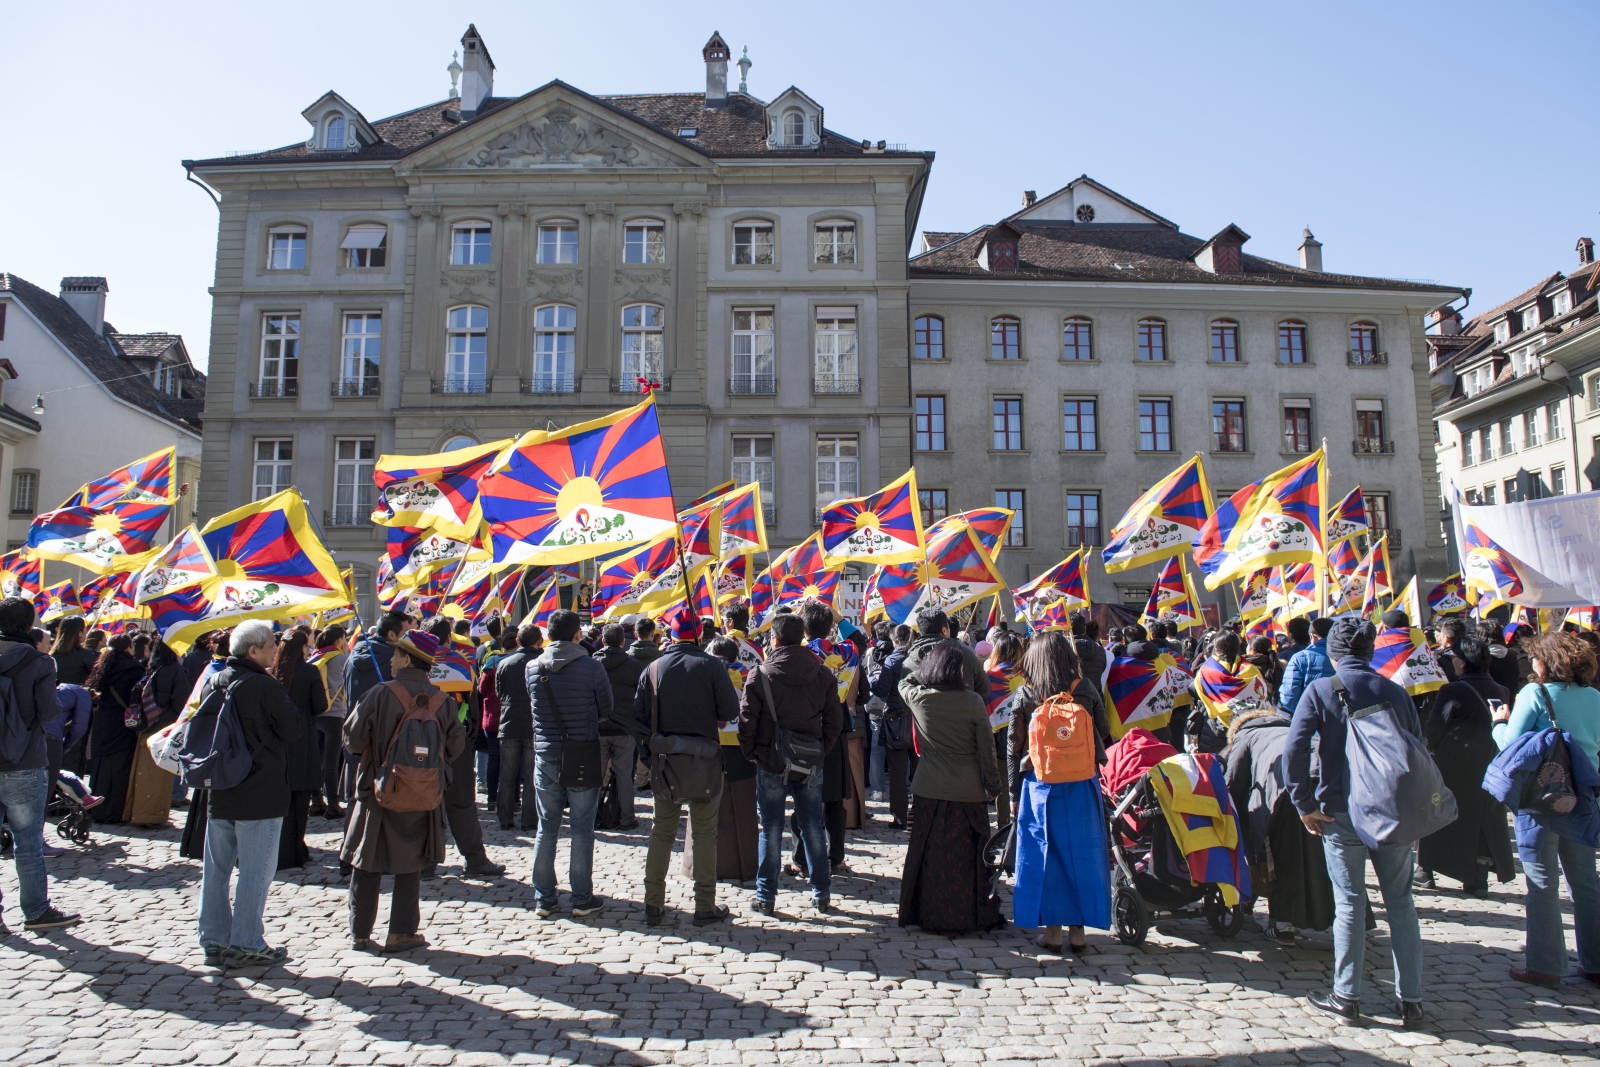 Zgromadzeni ludzie świętują 58 rocznicę Tybetańskiego Powstania Narodowego w Bernie, Szwajcaria.